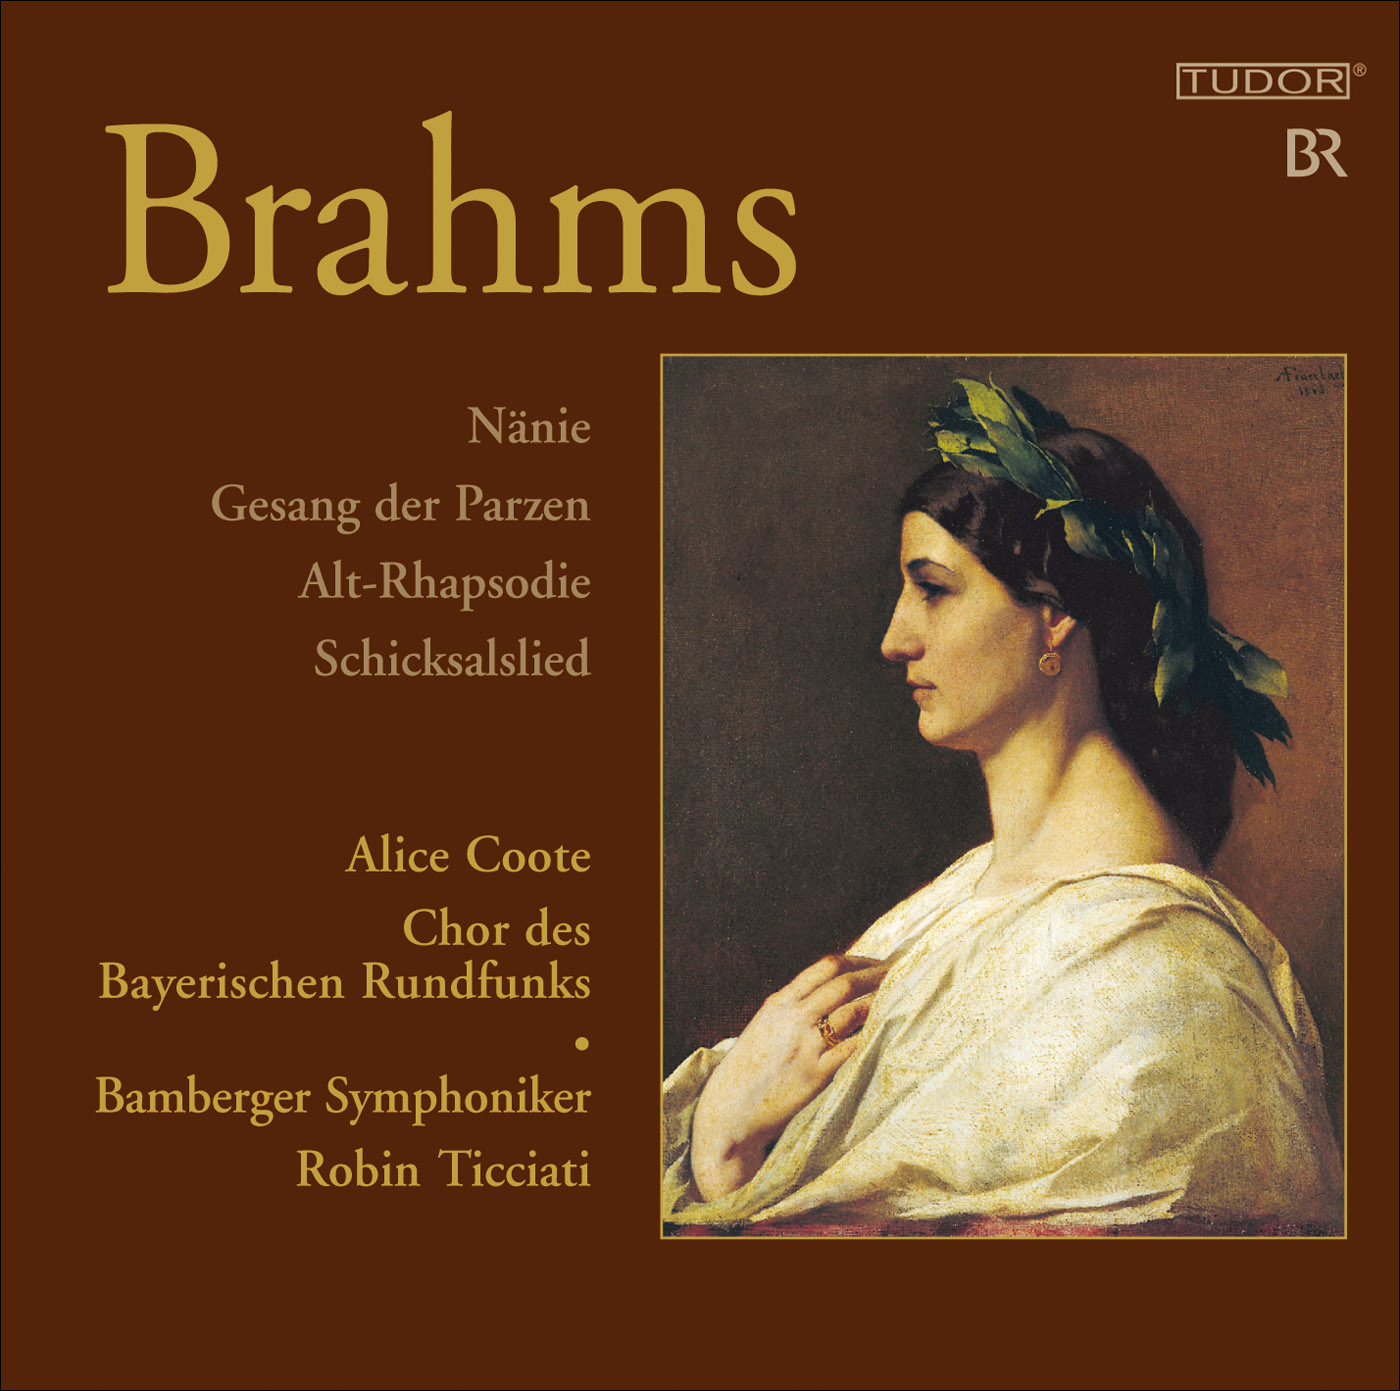 eClassical - Brahms, J.: Nanie / Gesang der Parzen / Alto Rhapsody ...